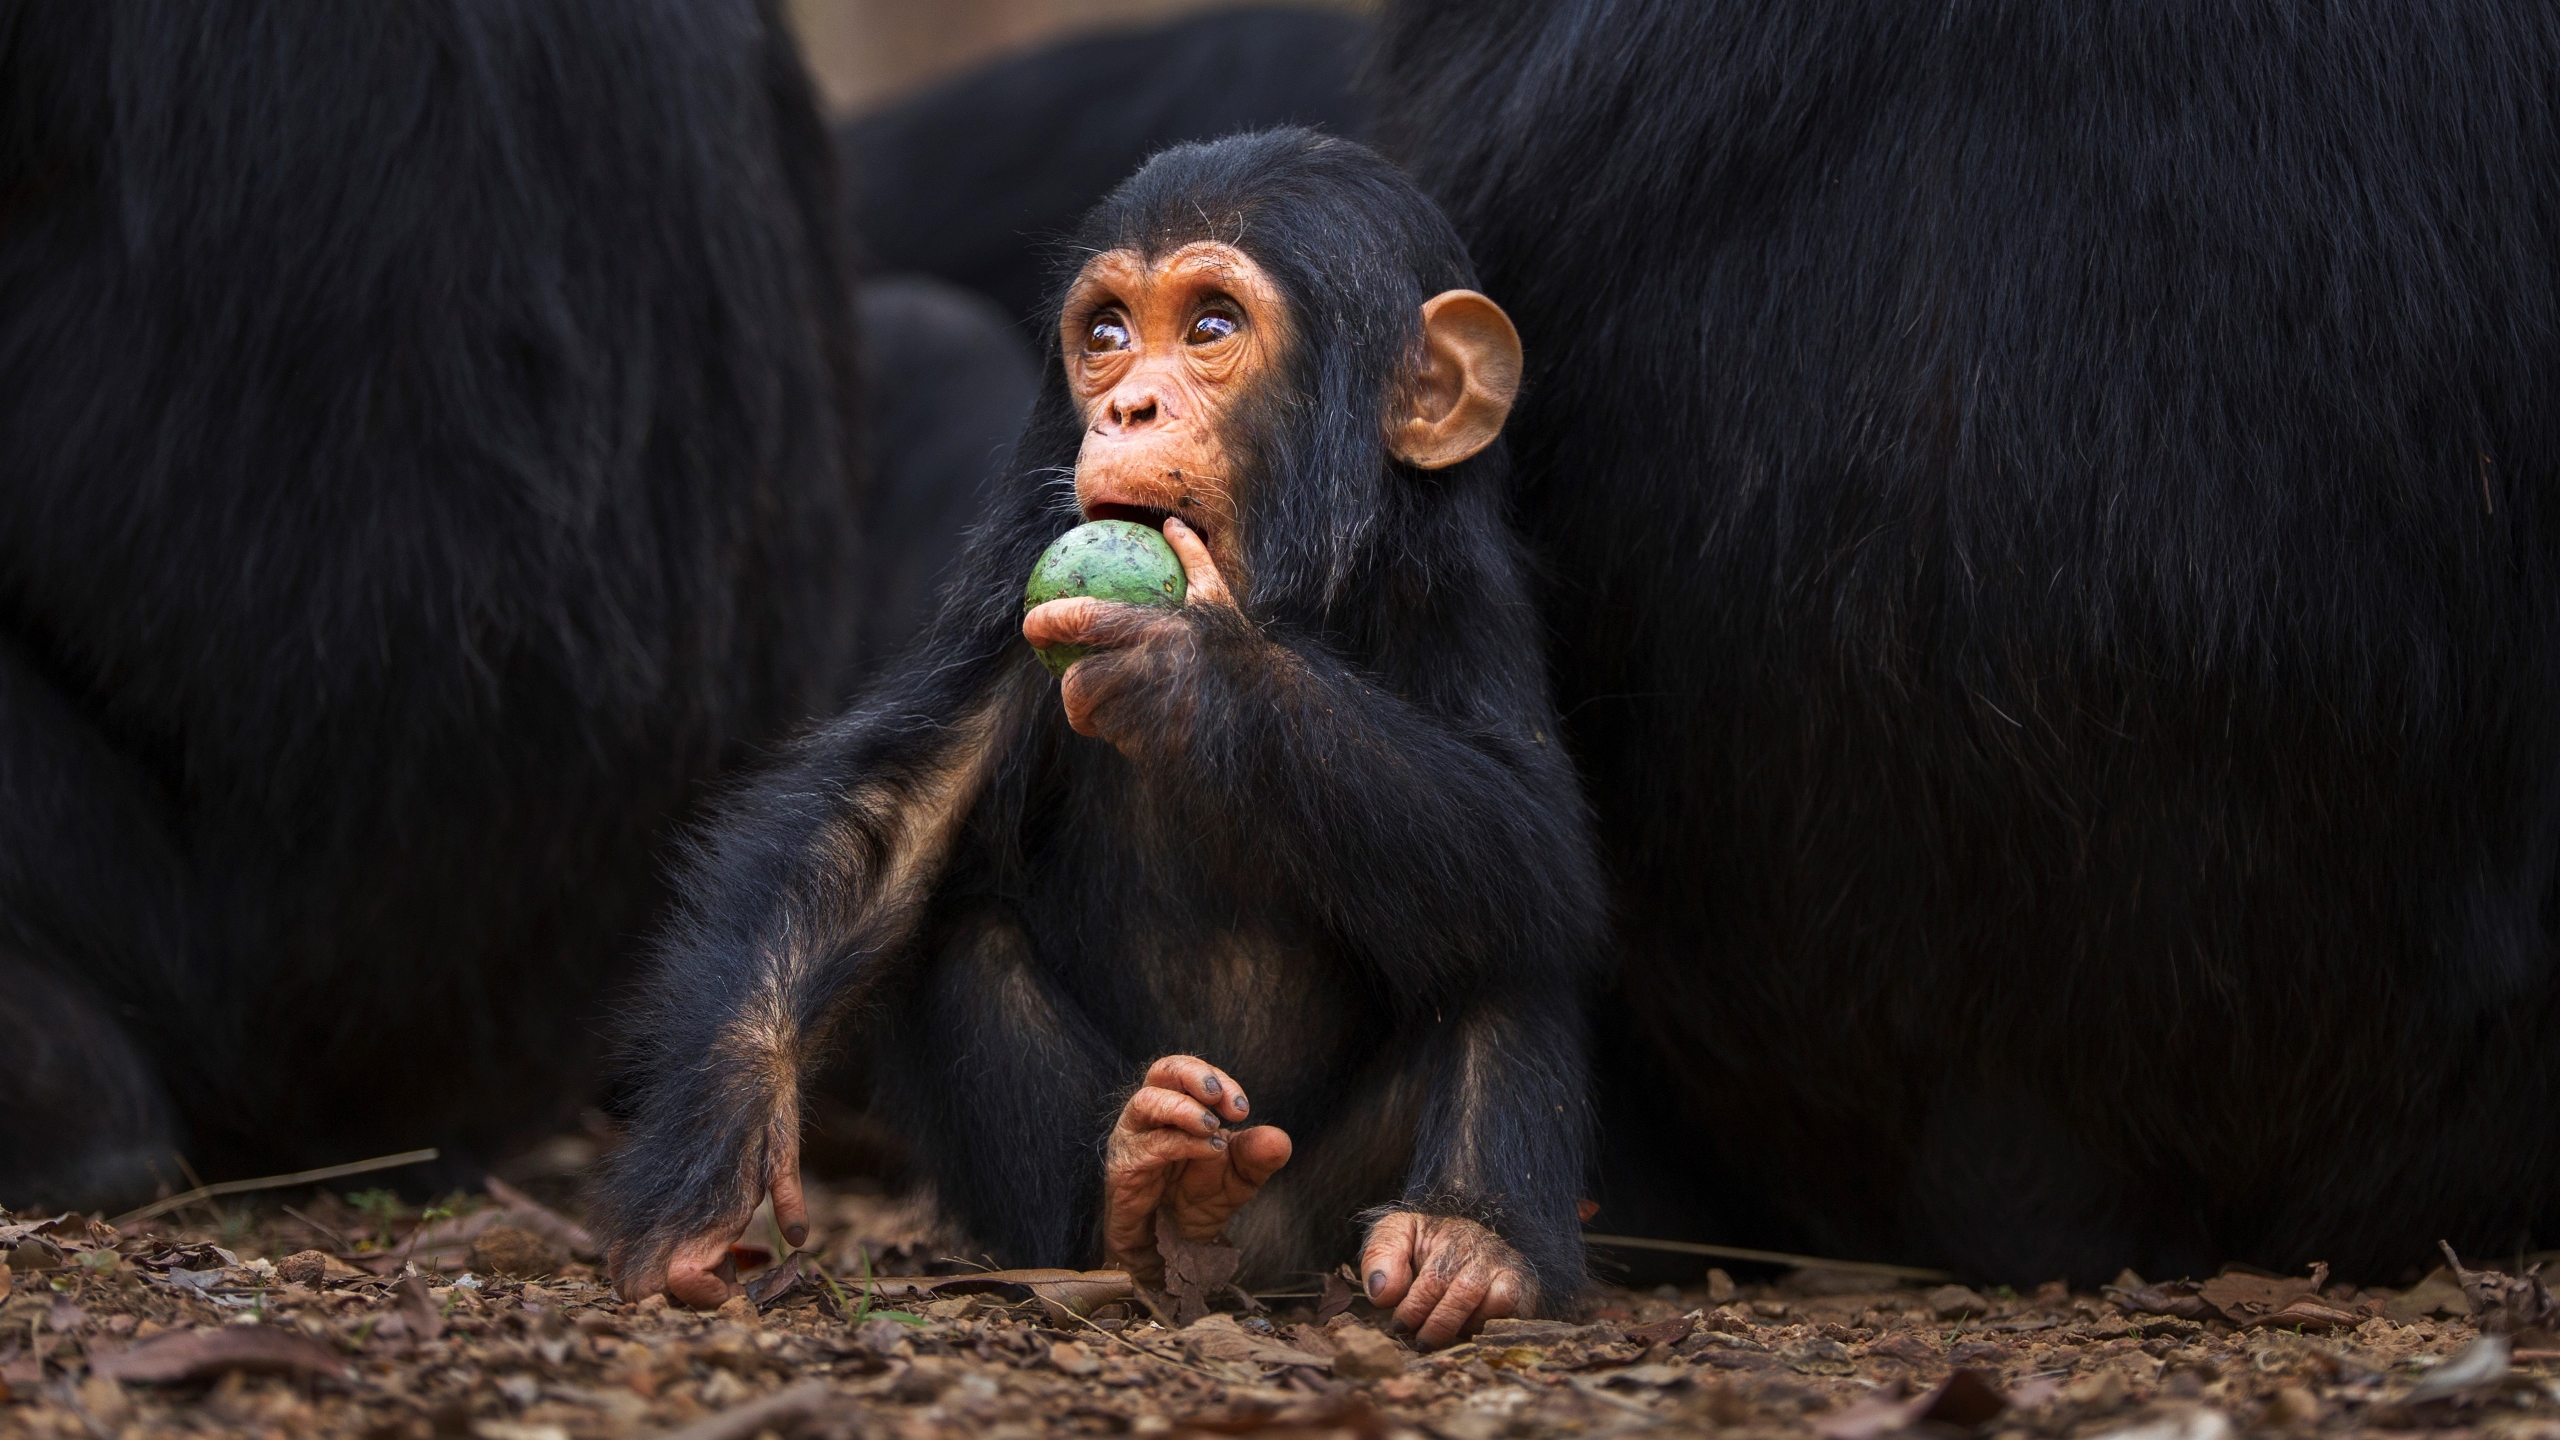 Šimpanzės kūdikio, žaidžiančio su vaisiais, paveikslas Gombės nacionaliniame parke, Tanzanijoje.